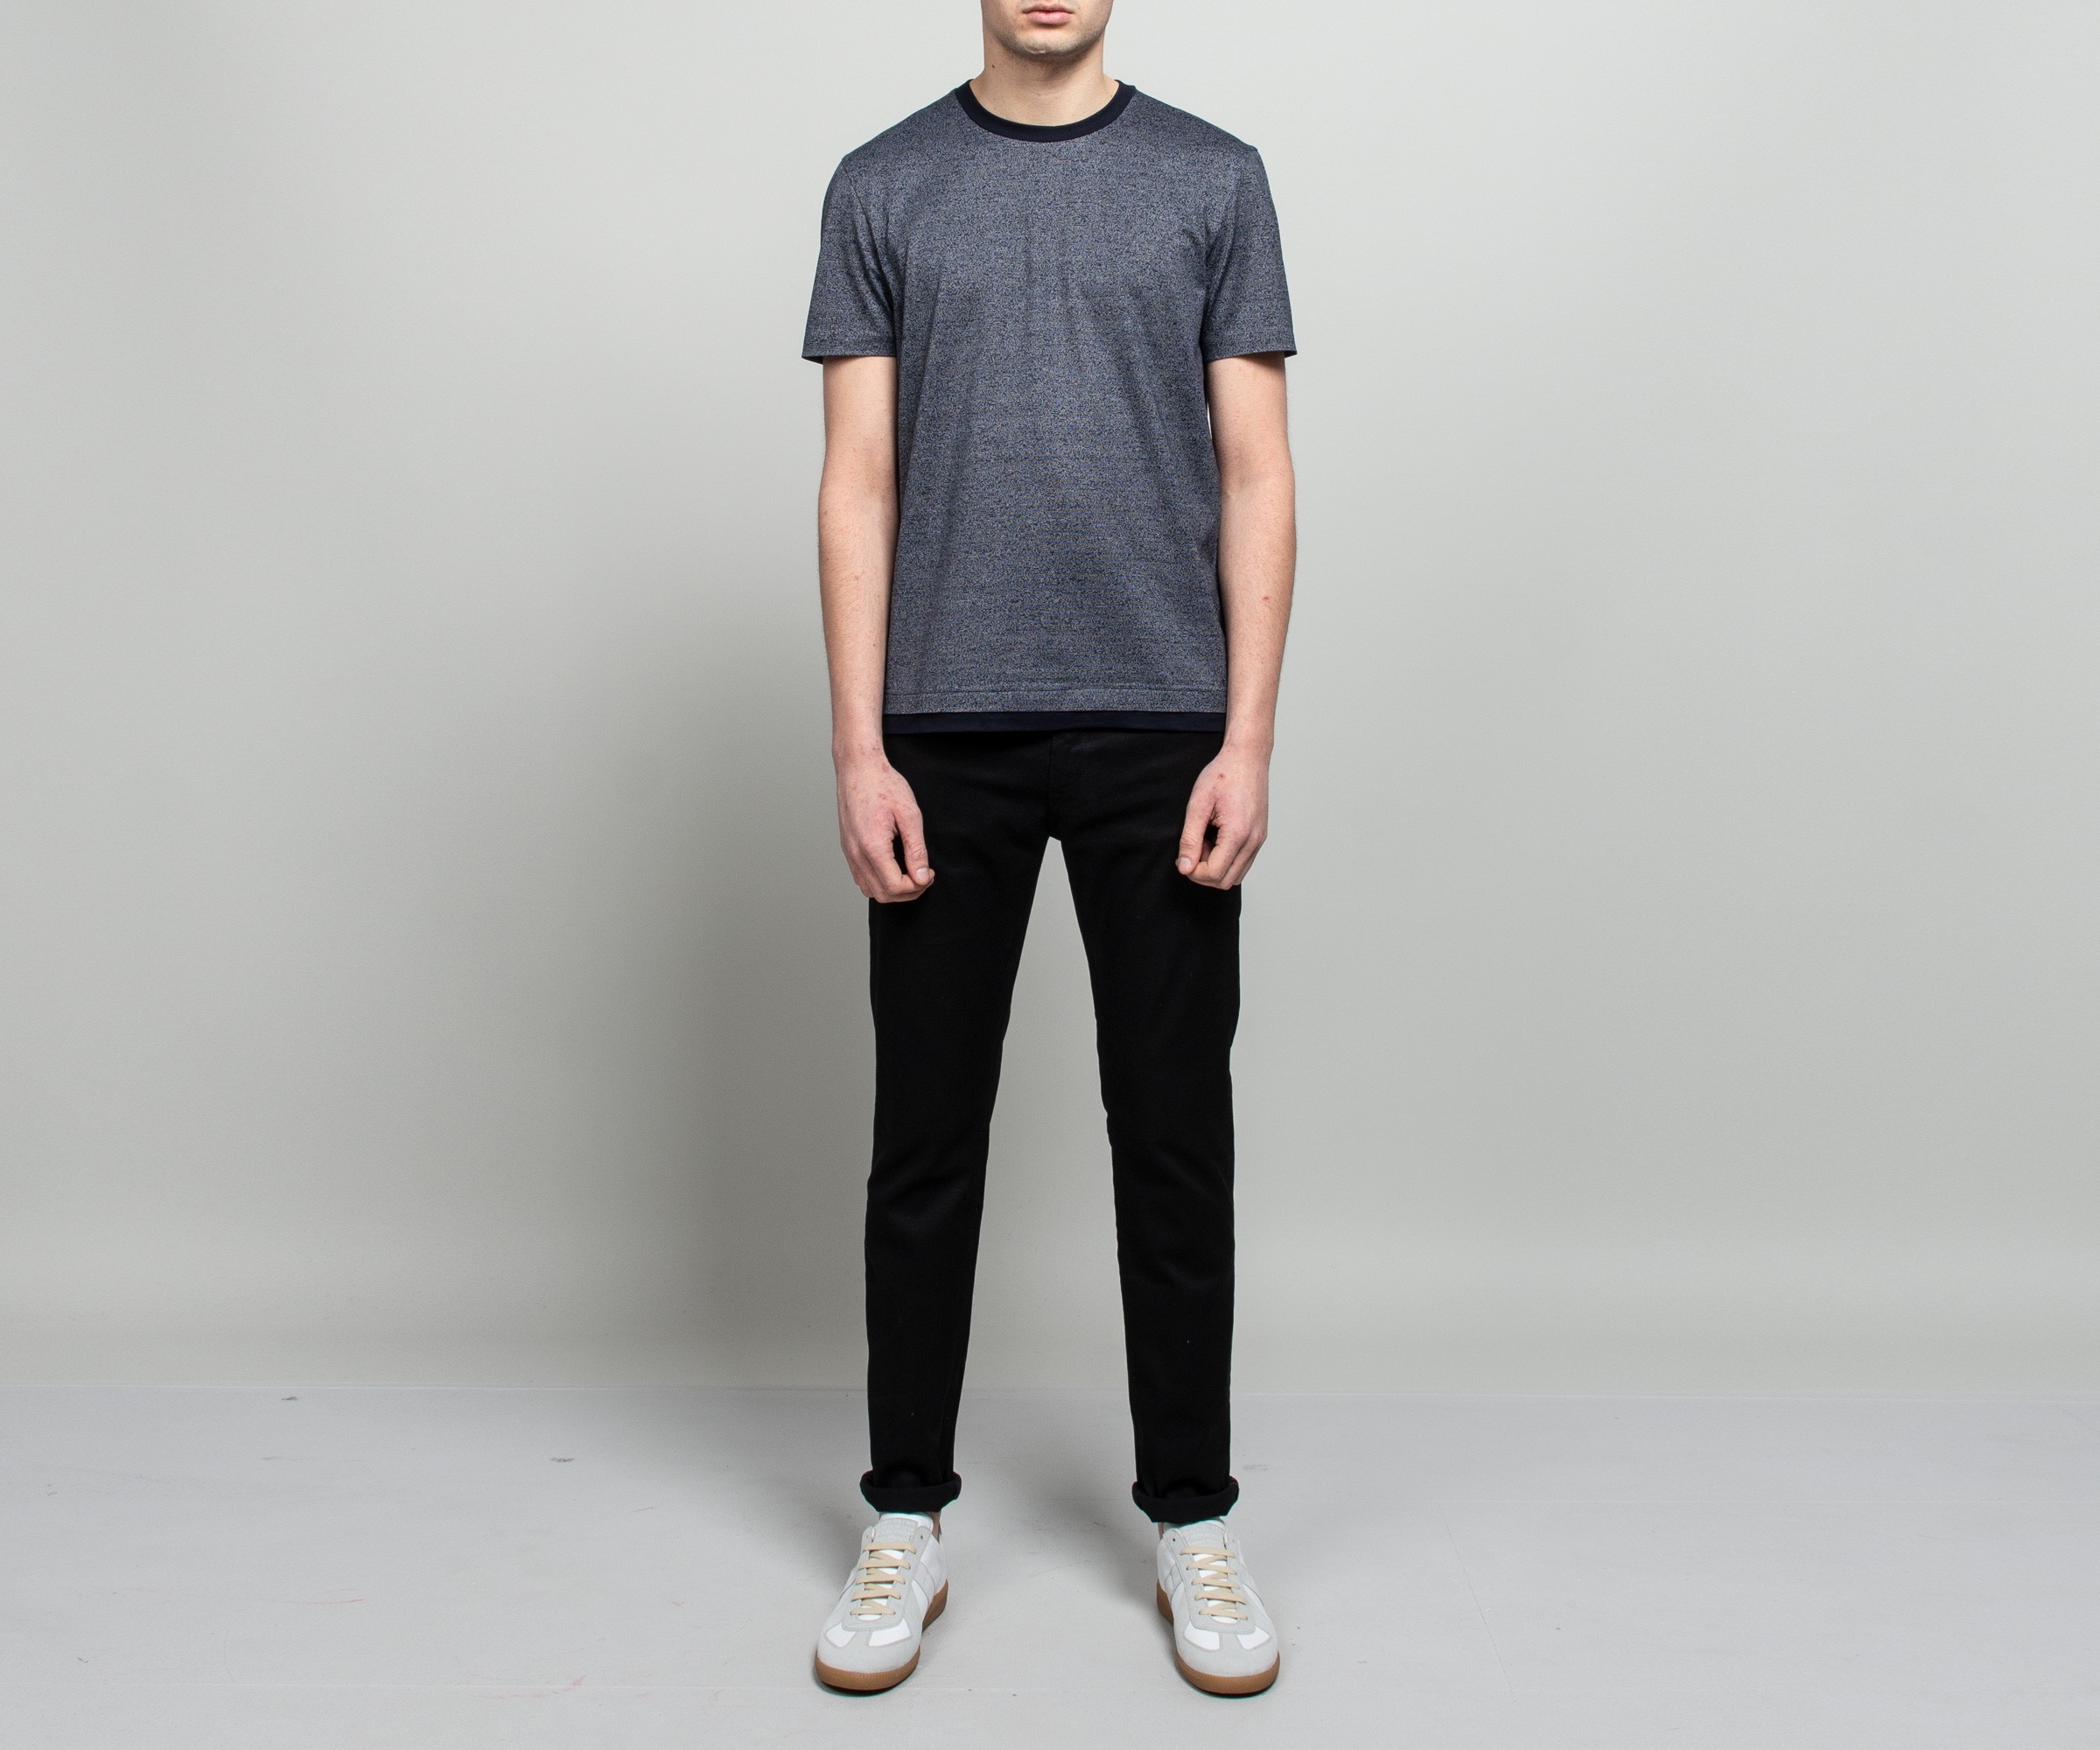 HUGO BOSS 'Tessler 111' Slim Fit Mercerised T-Shirt Navy